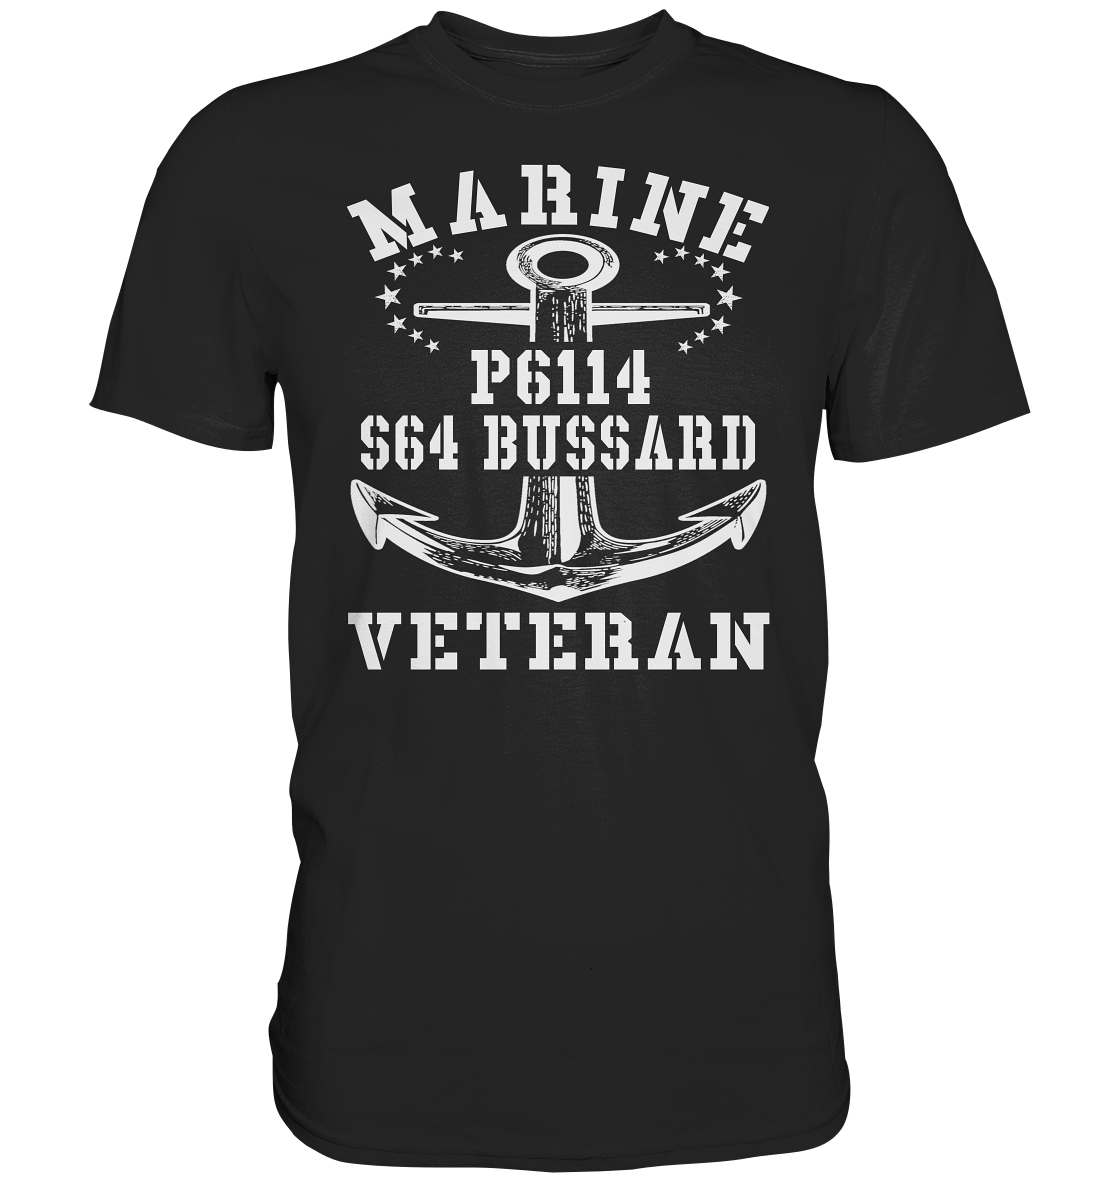 FK-Schnellboot P6114 BUSSARD Marine Veteran - Premium Shirt